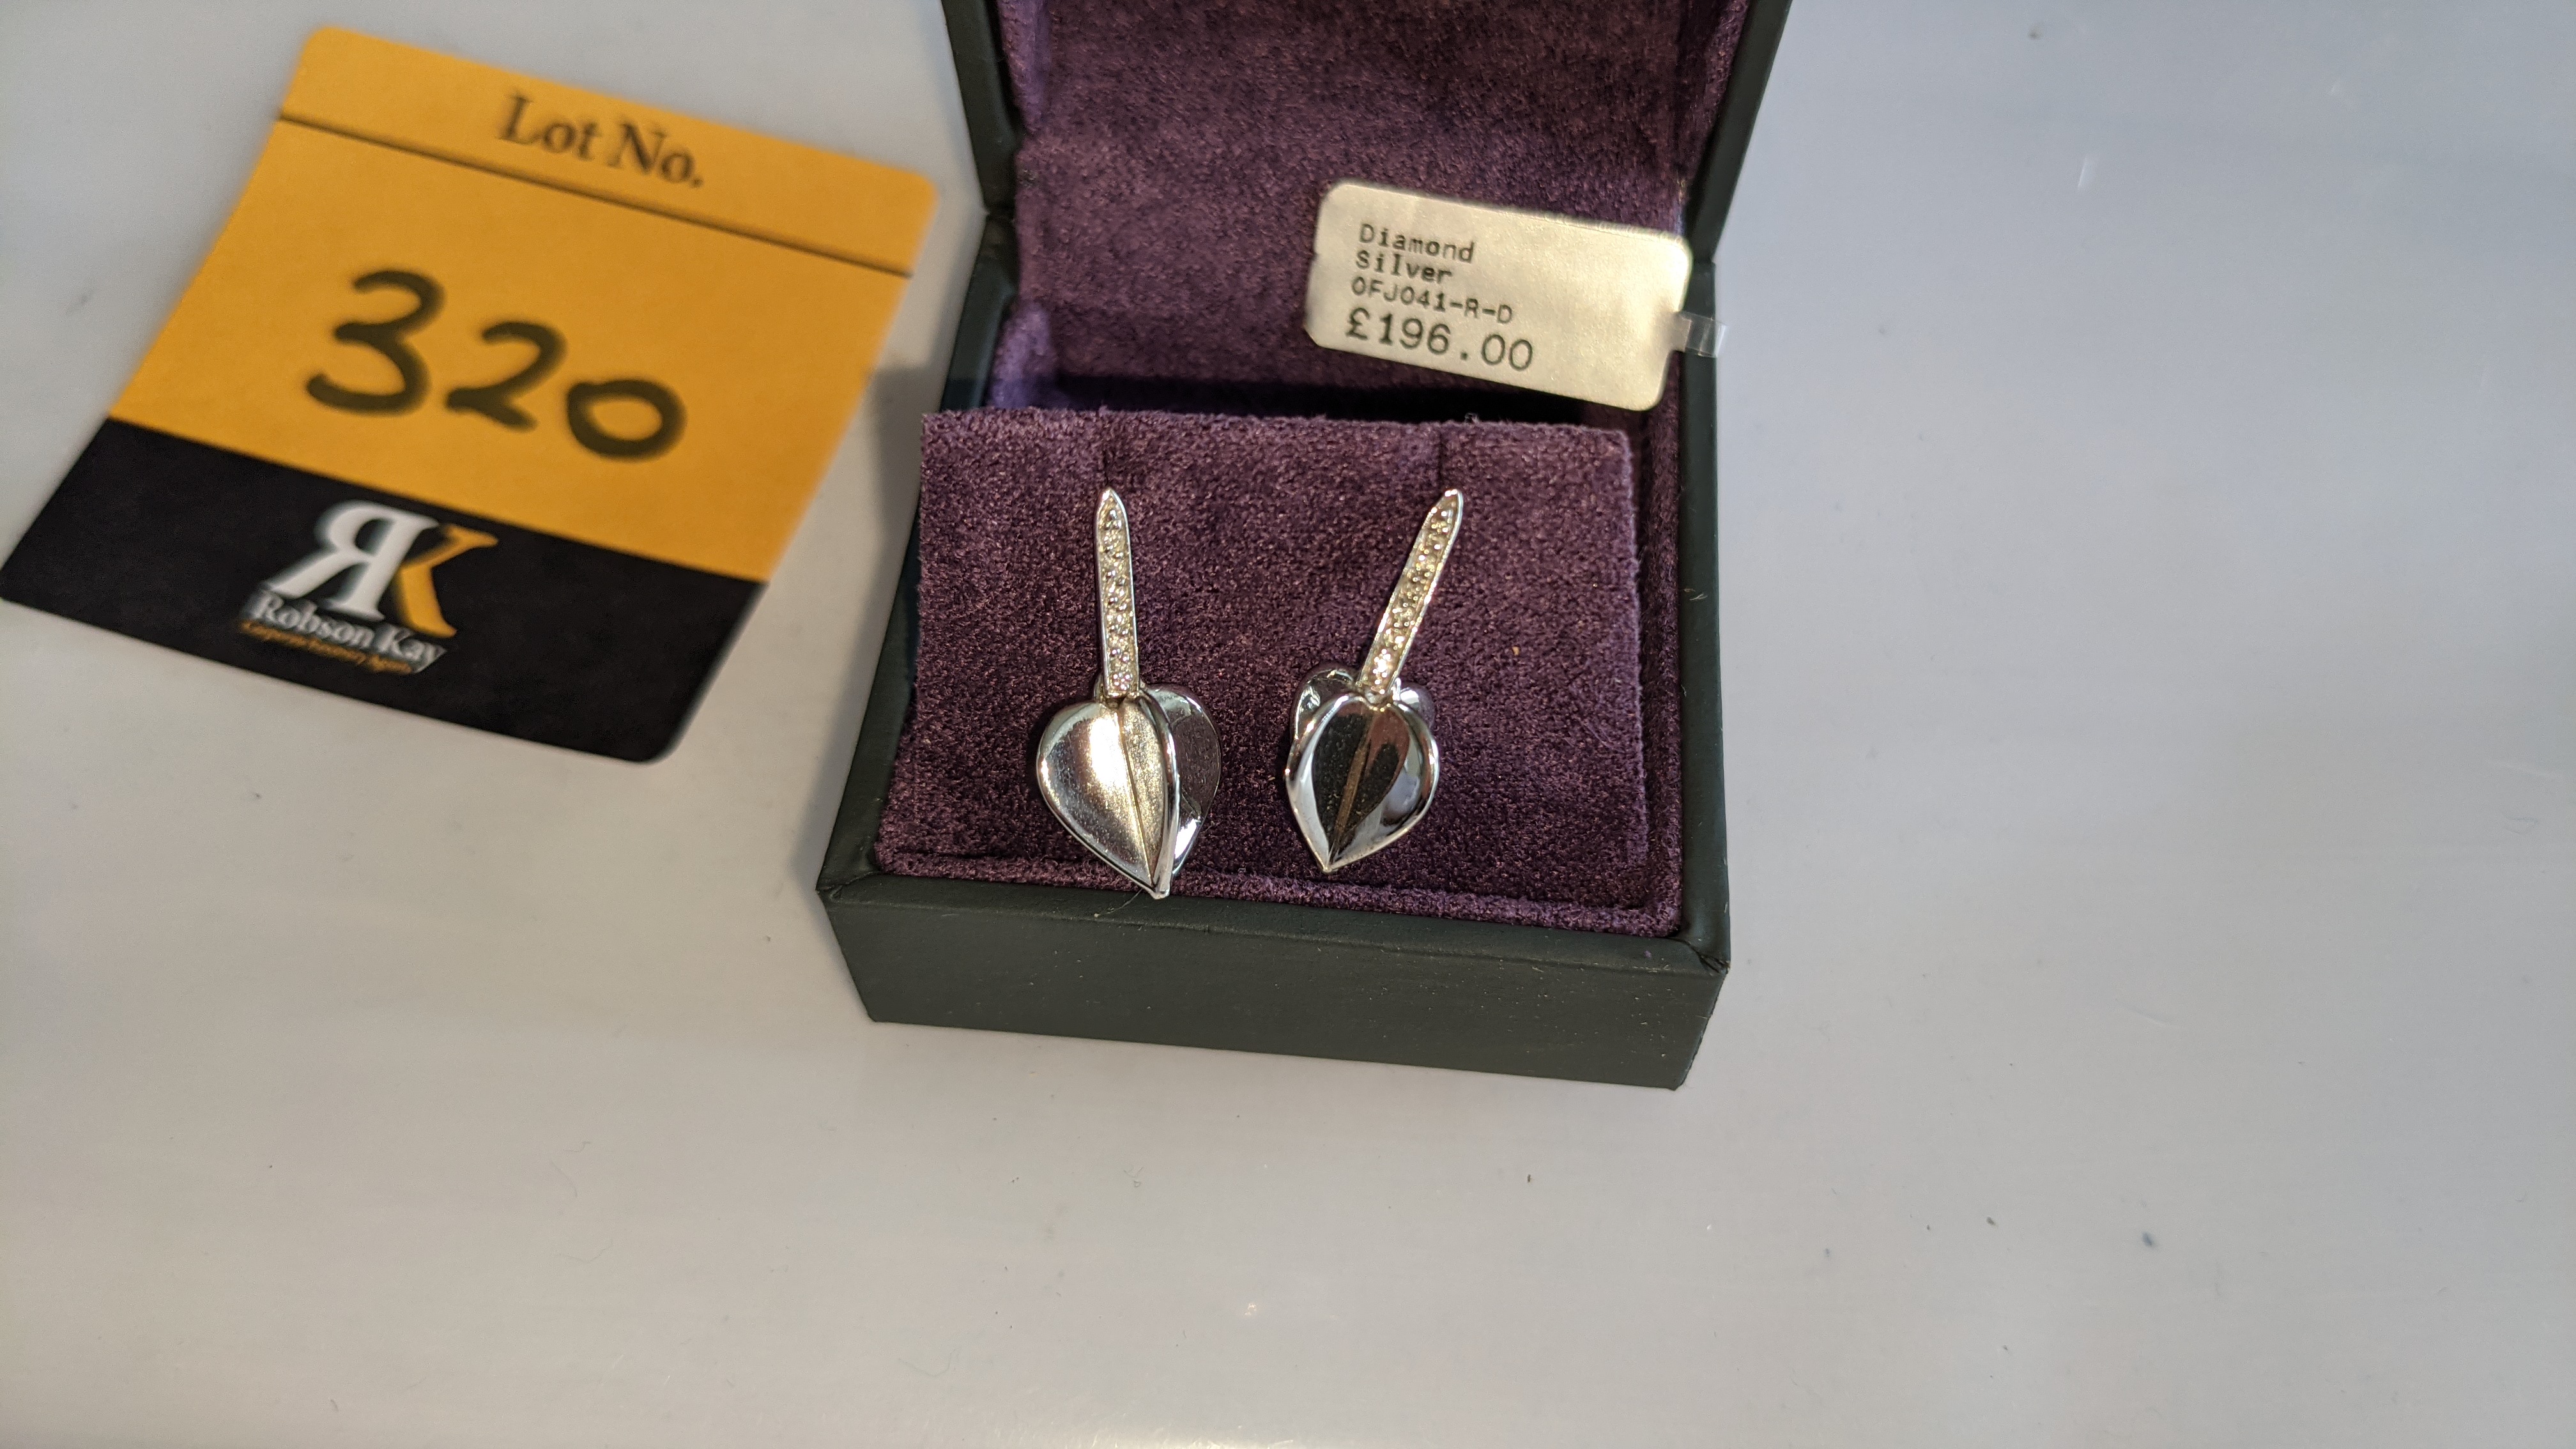 Pair of earrings, retail price £196